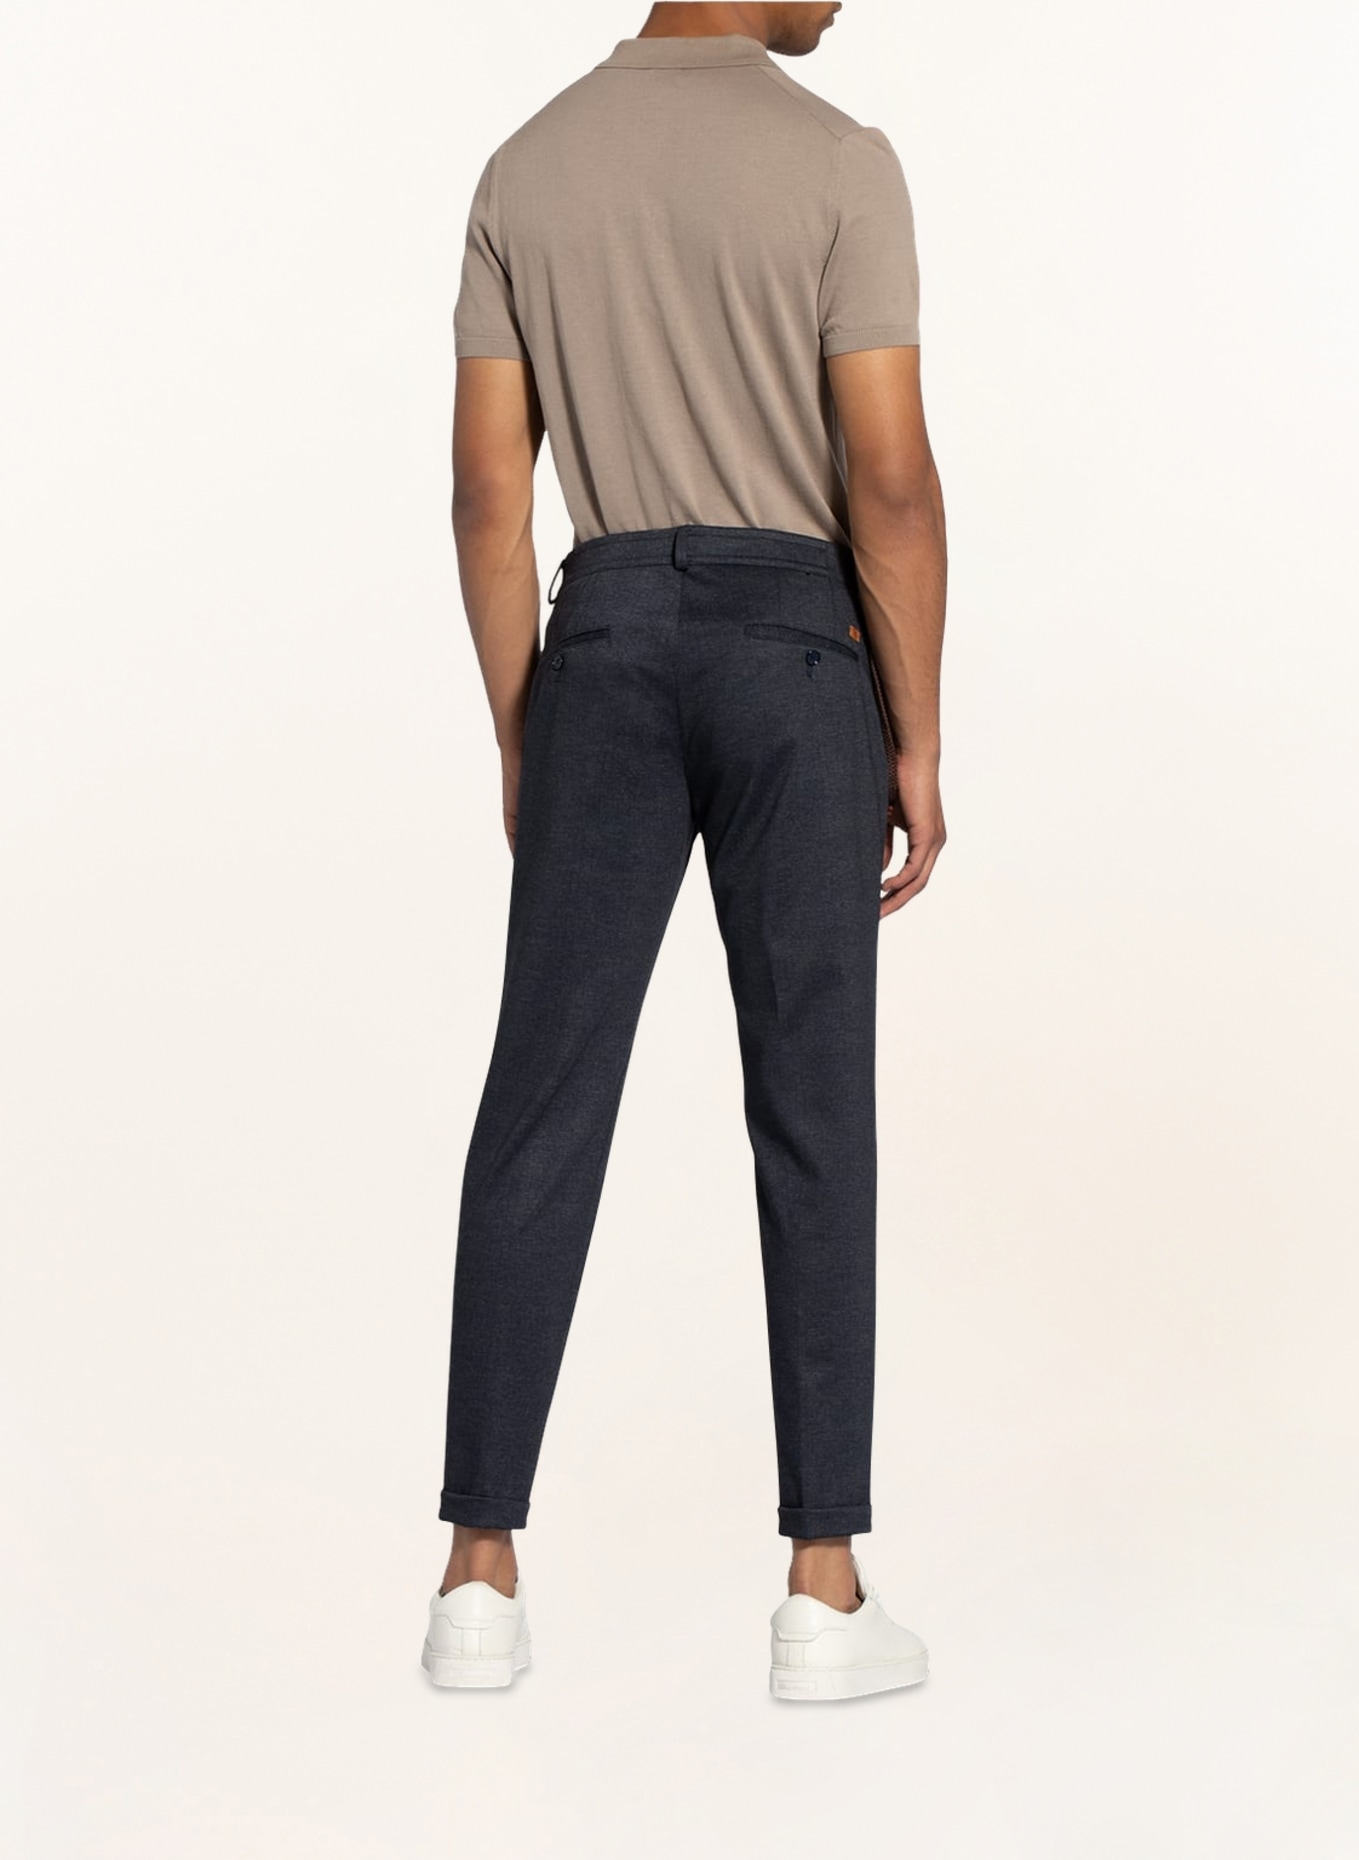 CG - CLUB of GENTS Suit trousers CONN Super slim fit, Color: 63 BLAU DUNKEL (Image 4)